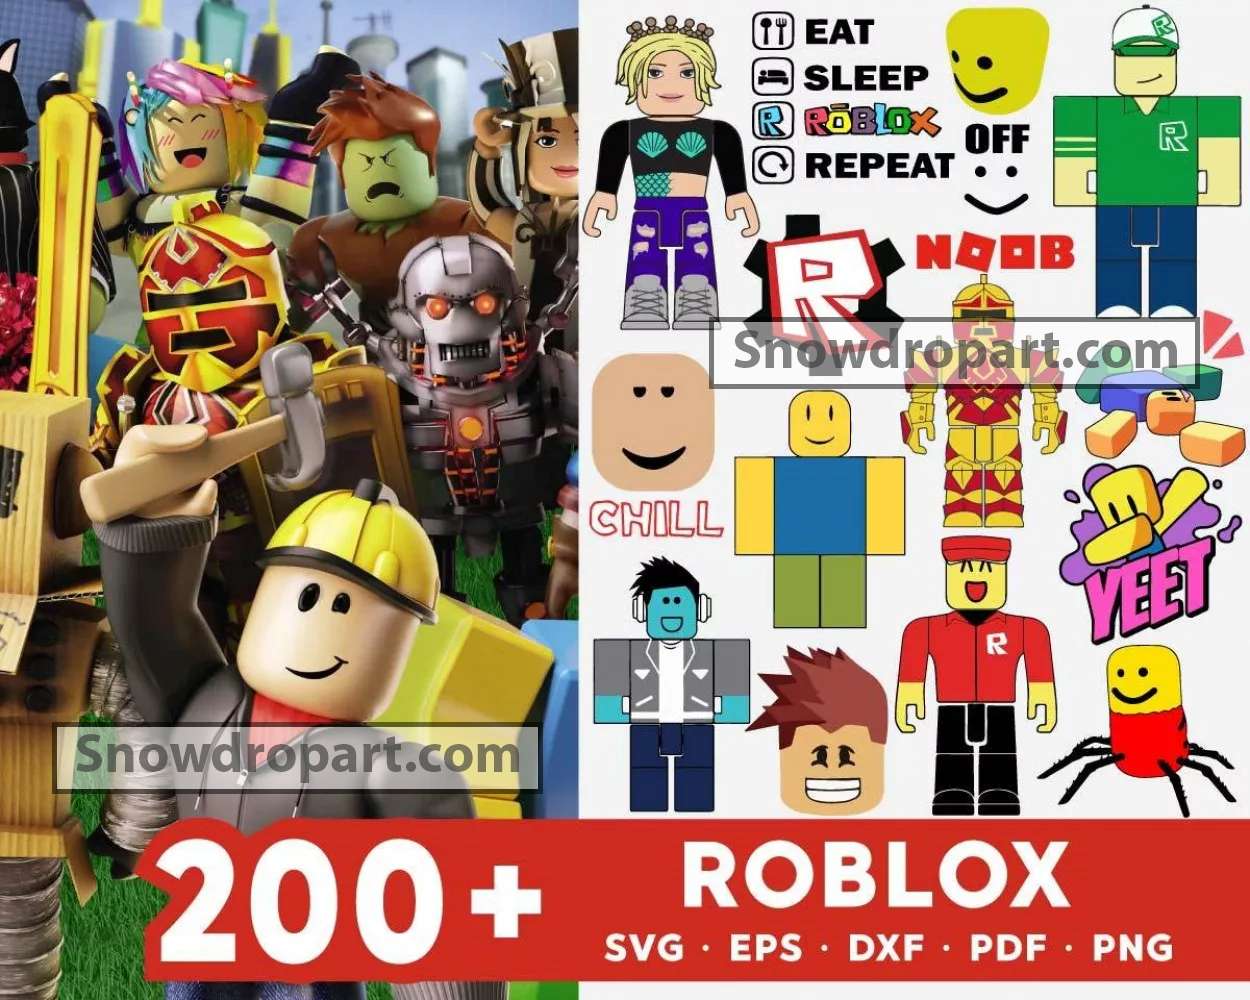 Roblox Face Bundle SVG